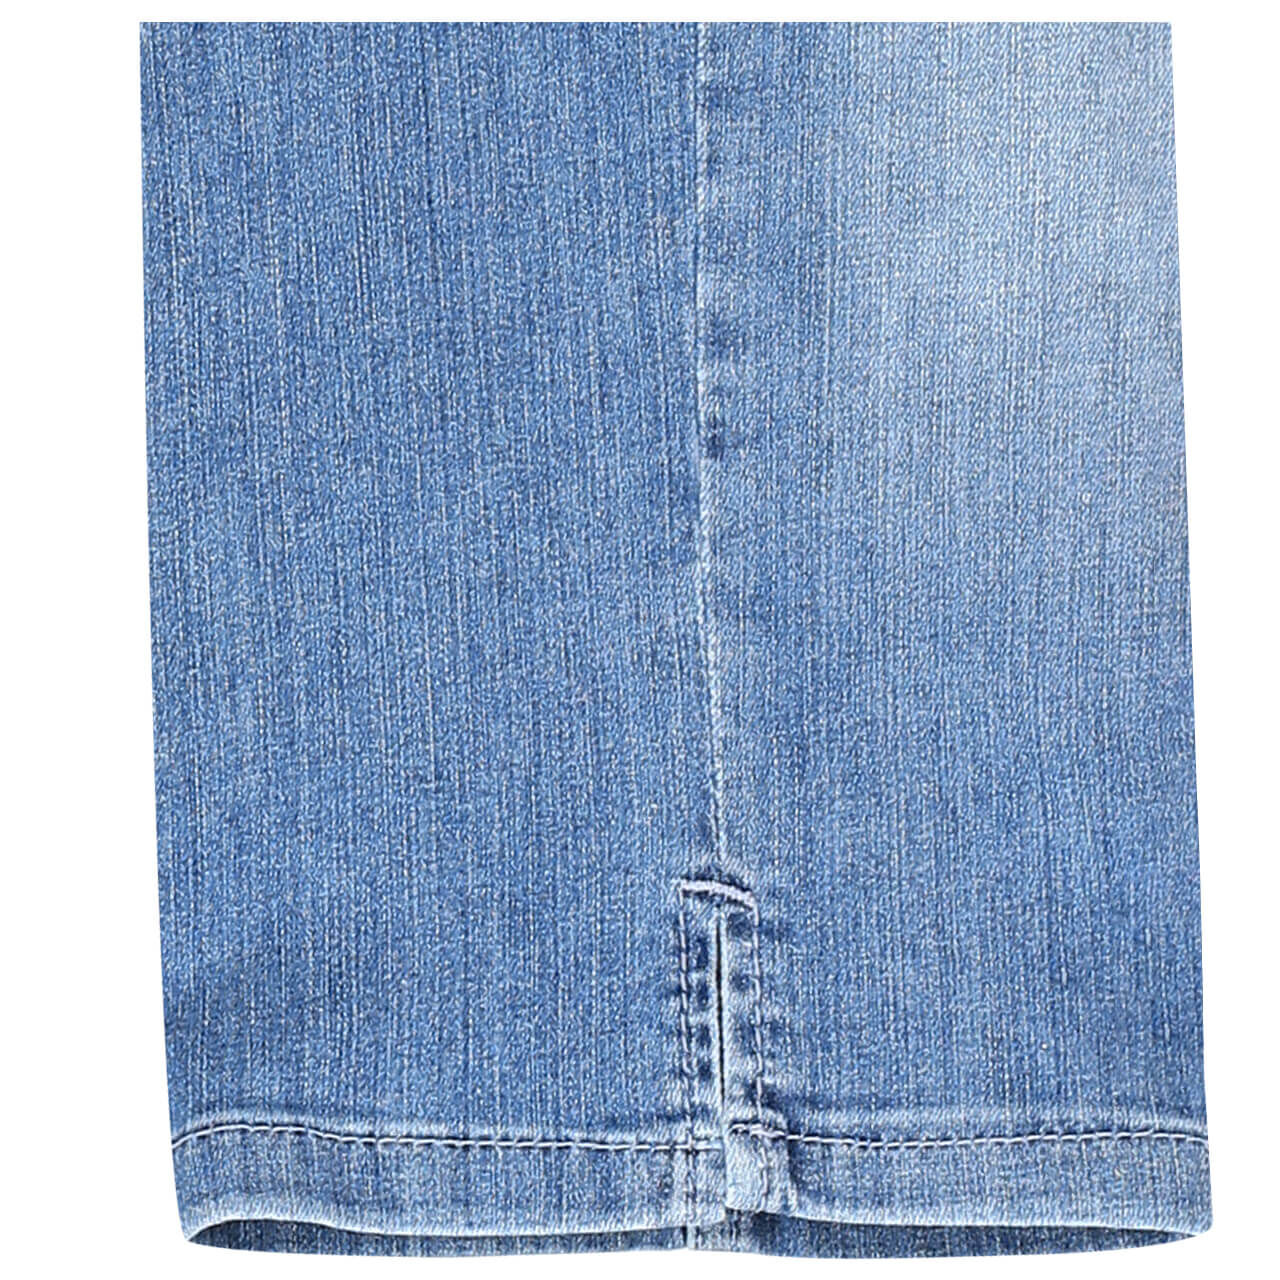 MAC Jeans Capri für Damen in Hellblau angewaschen, FarbNr.: D531